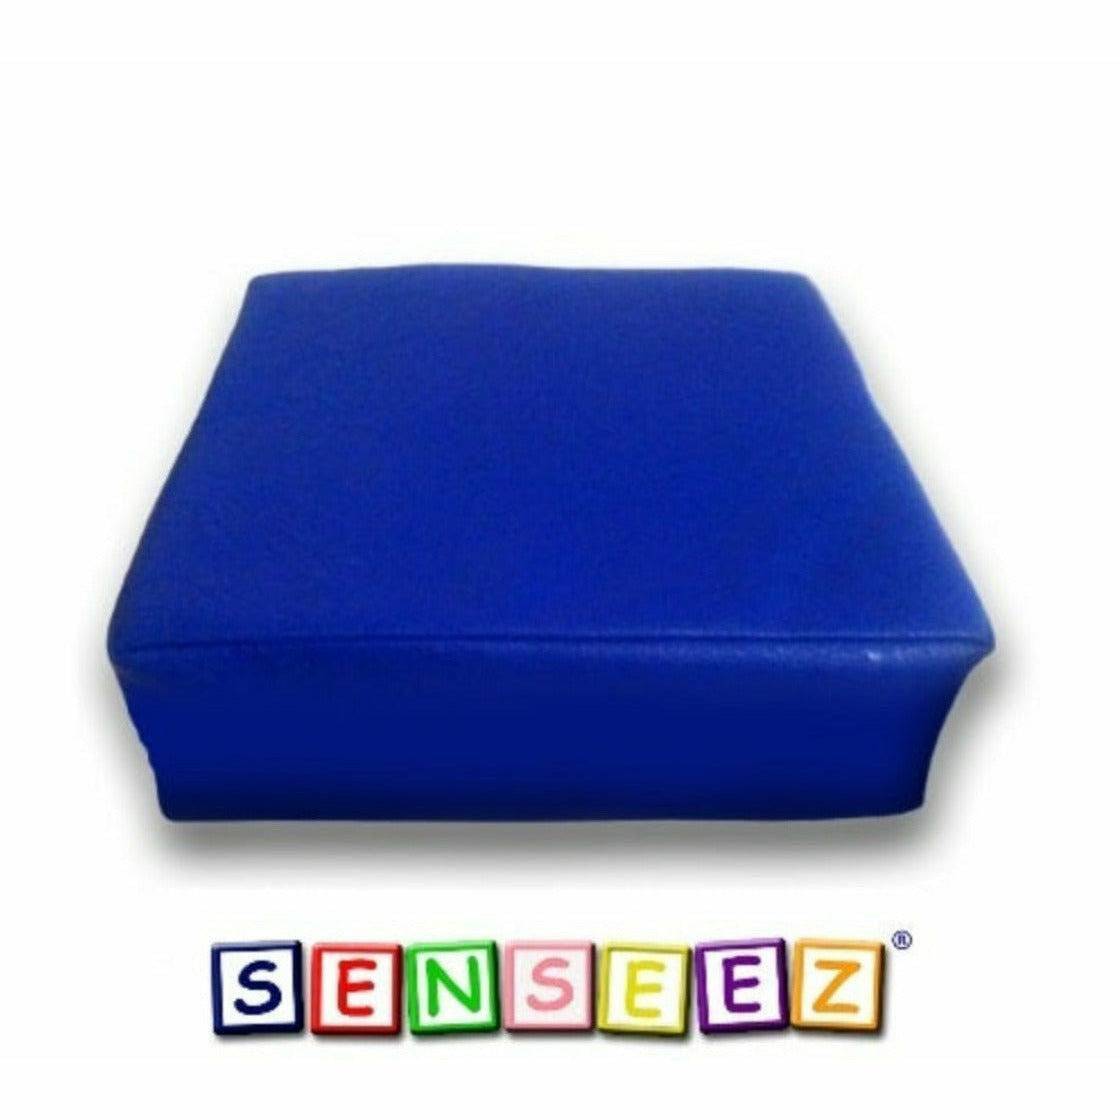 Senseez vibrating cushion - Blue Square (vinyl) - Sensory Circle